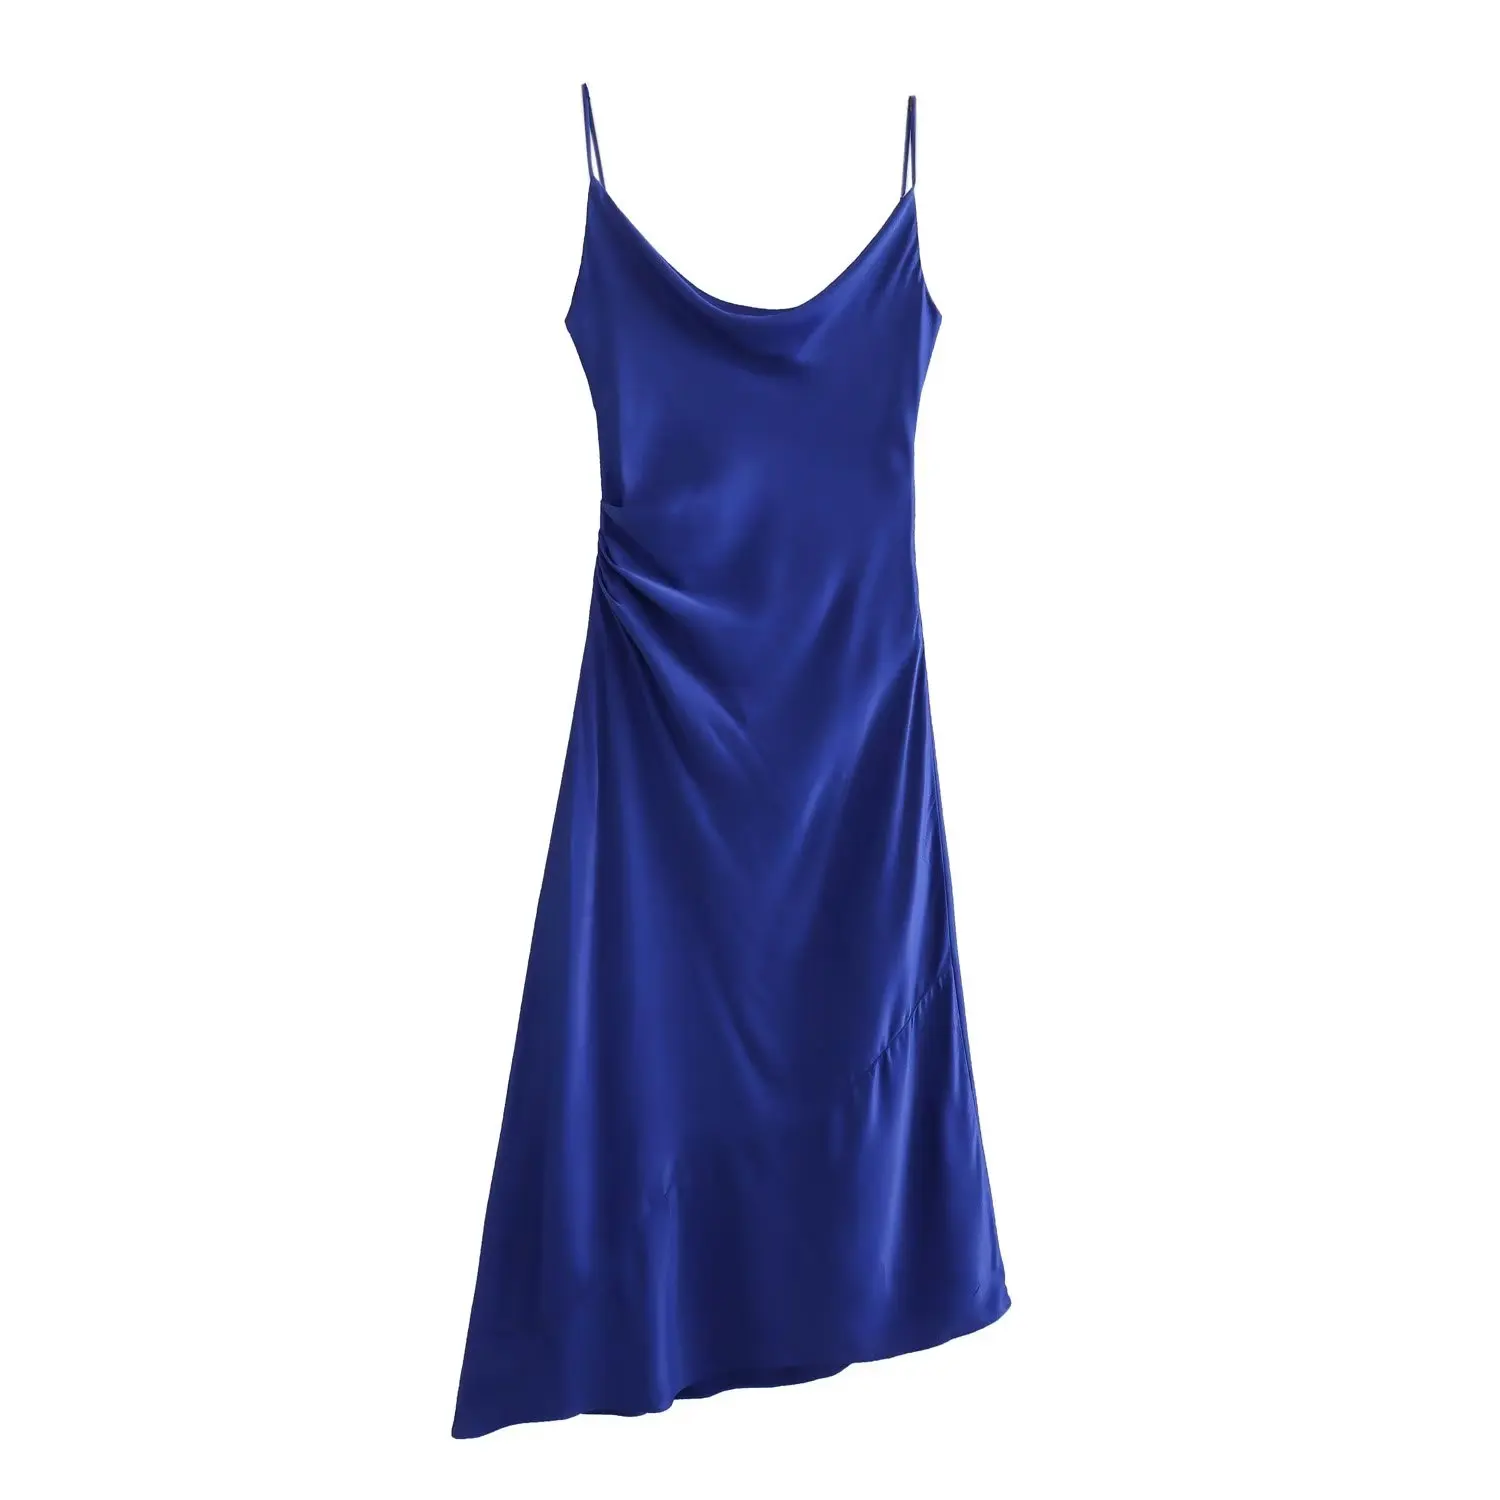 Blue fluid midi dress